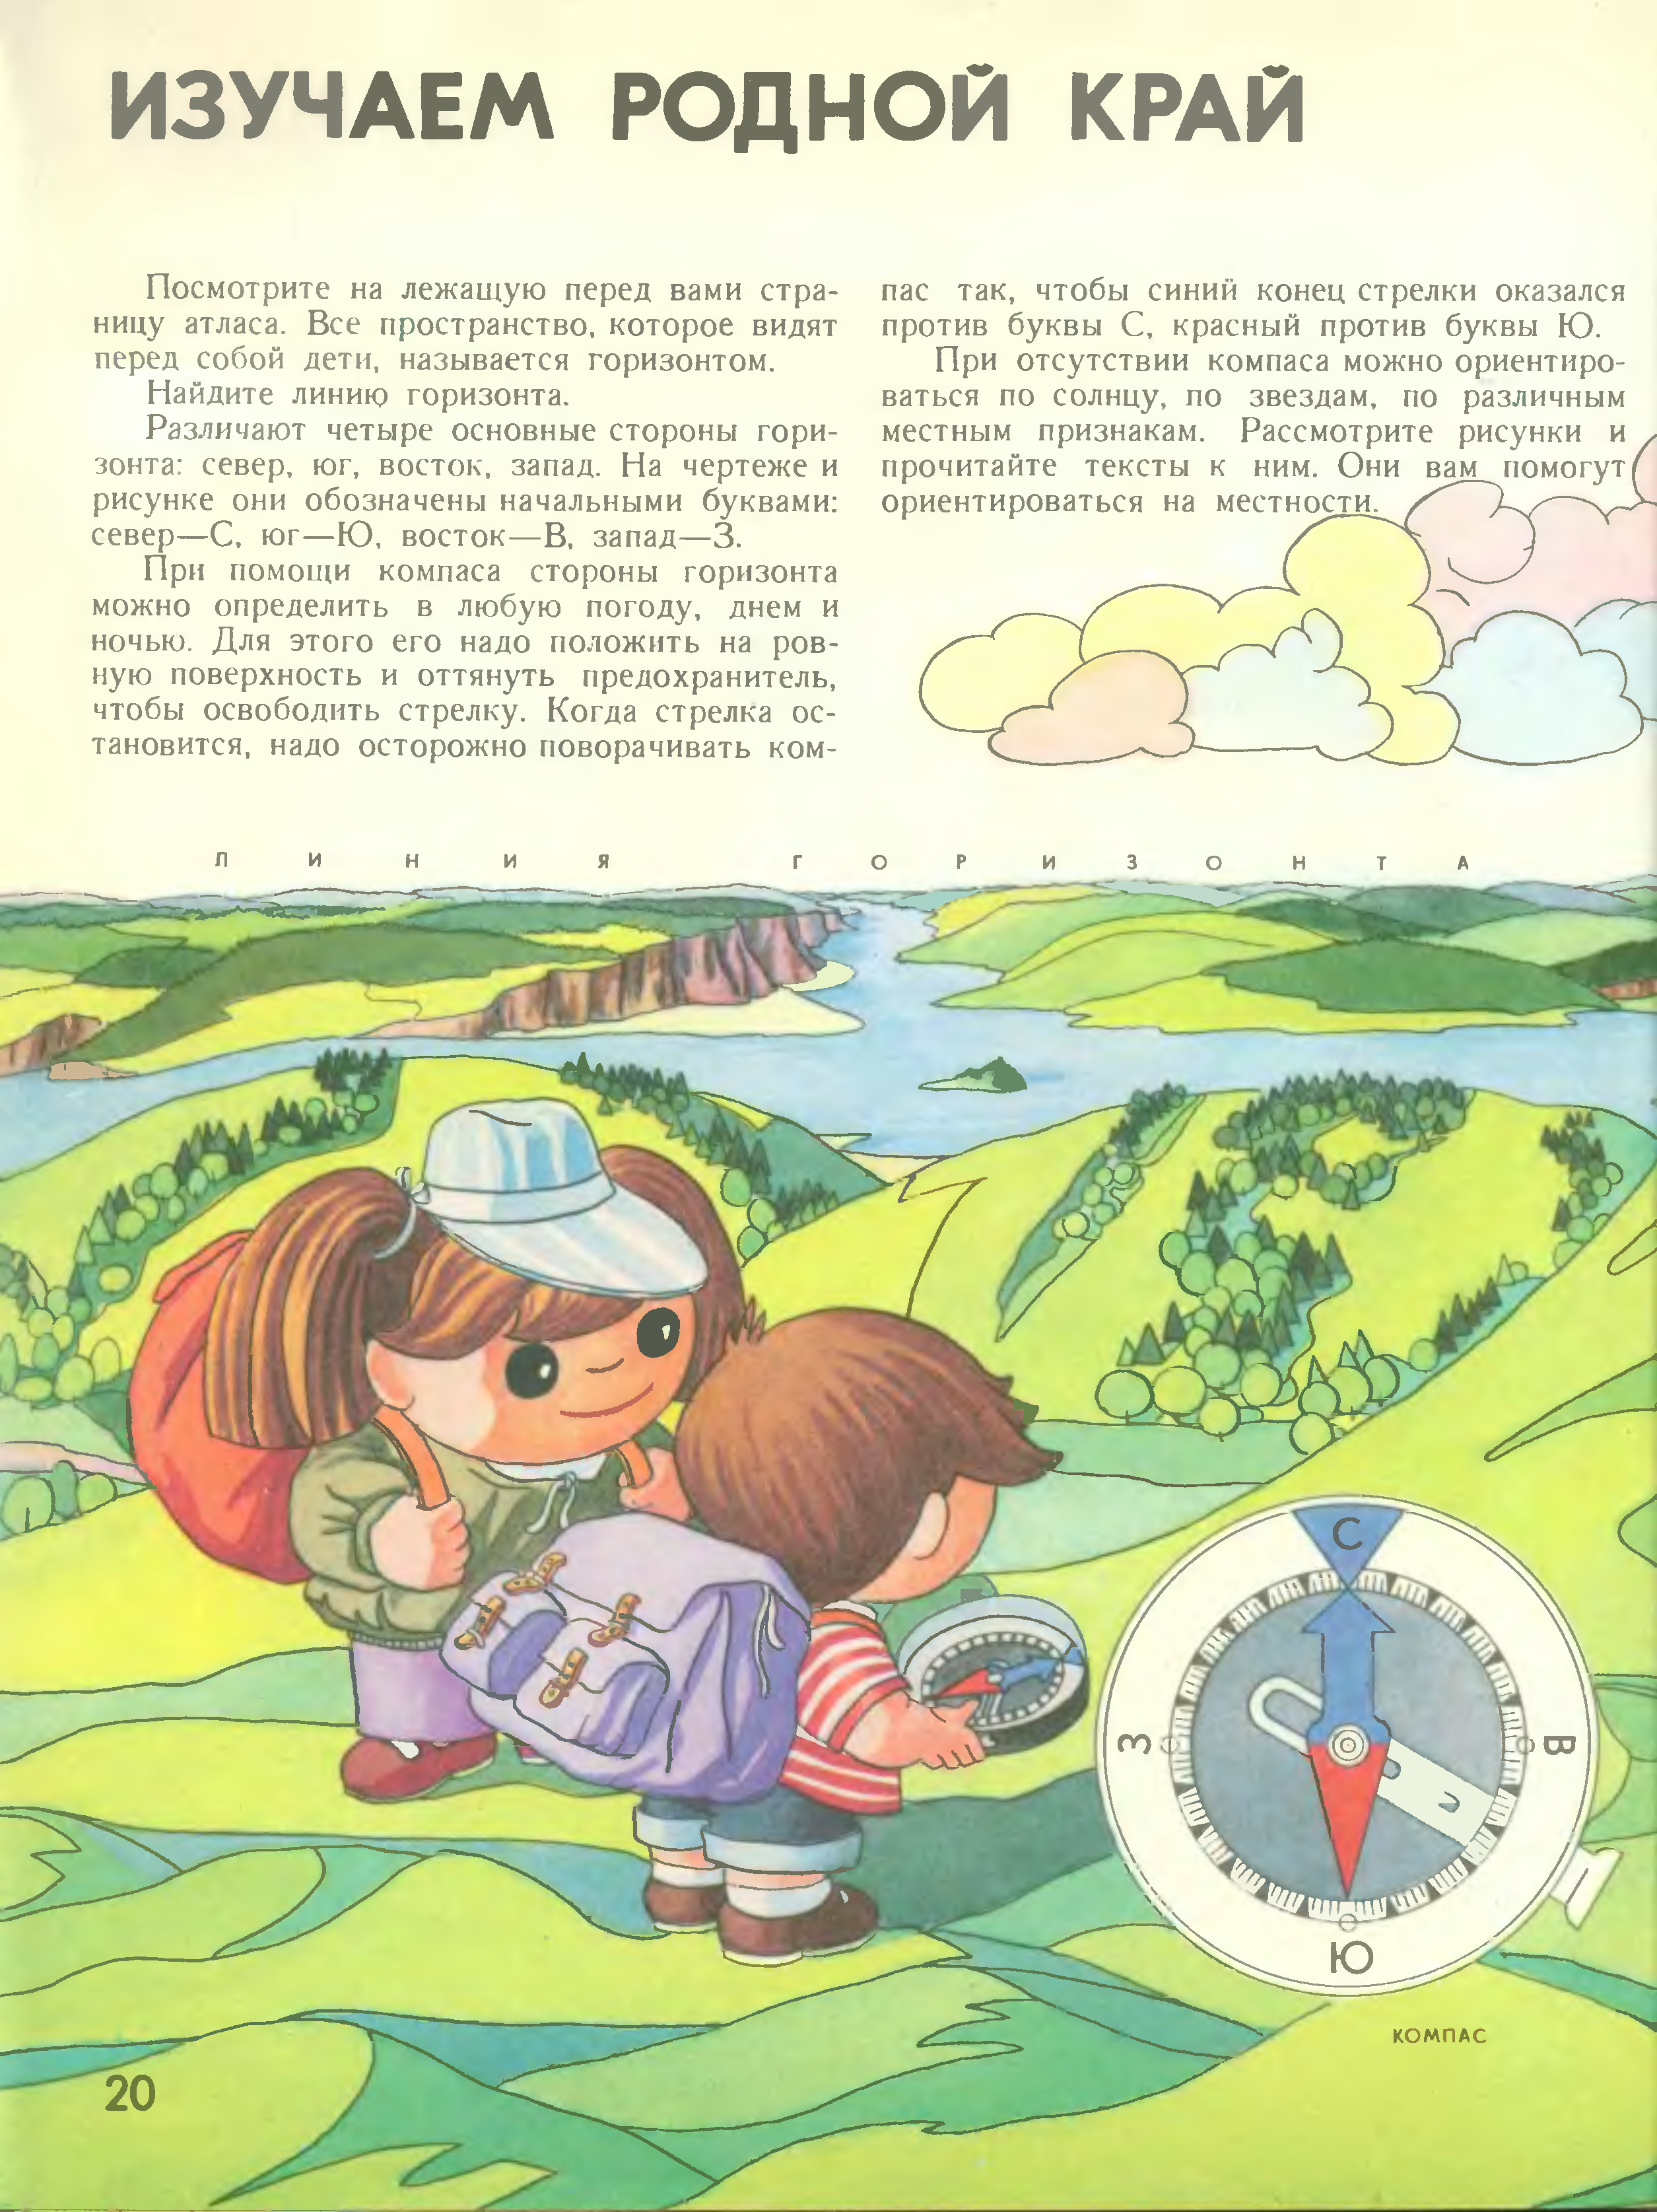 Советский атлас для детей мир и человек 1988